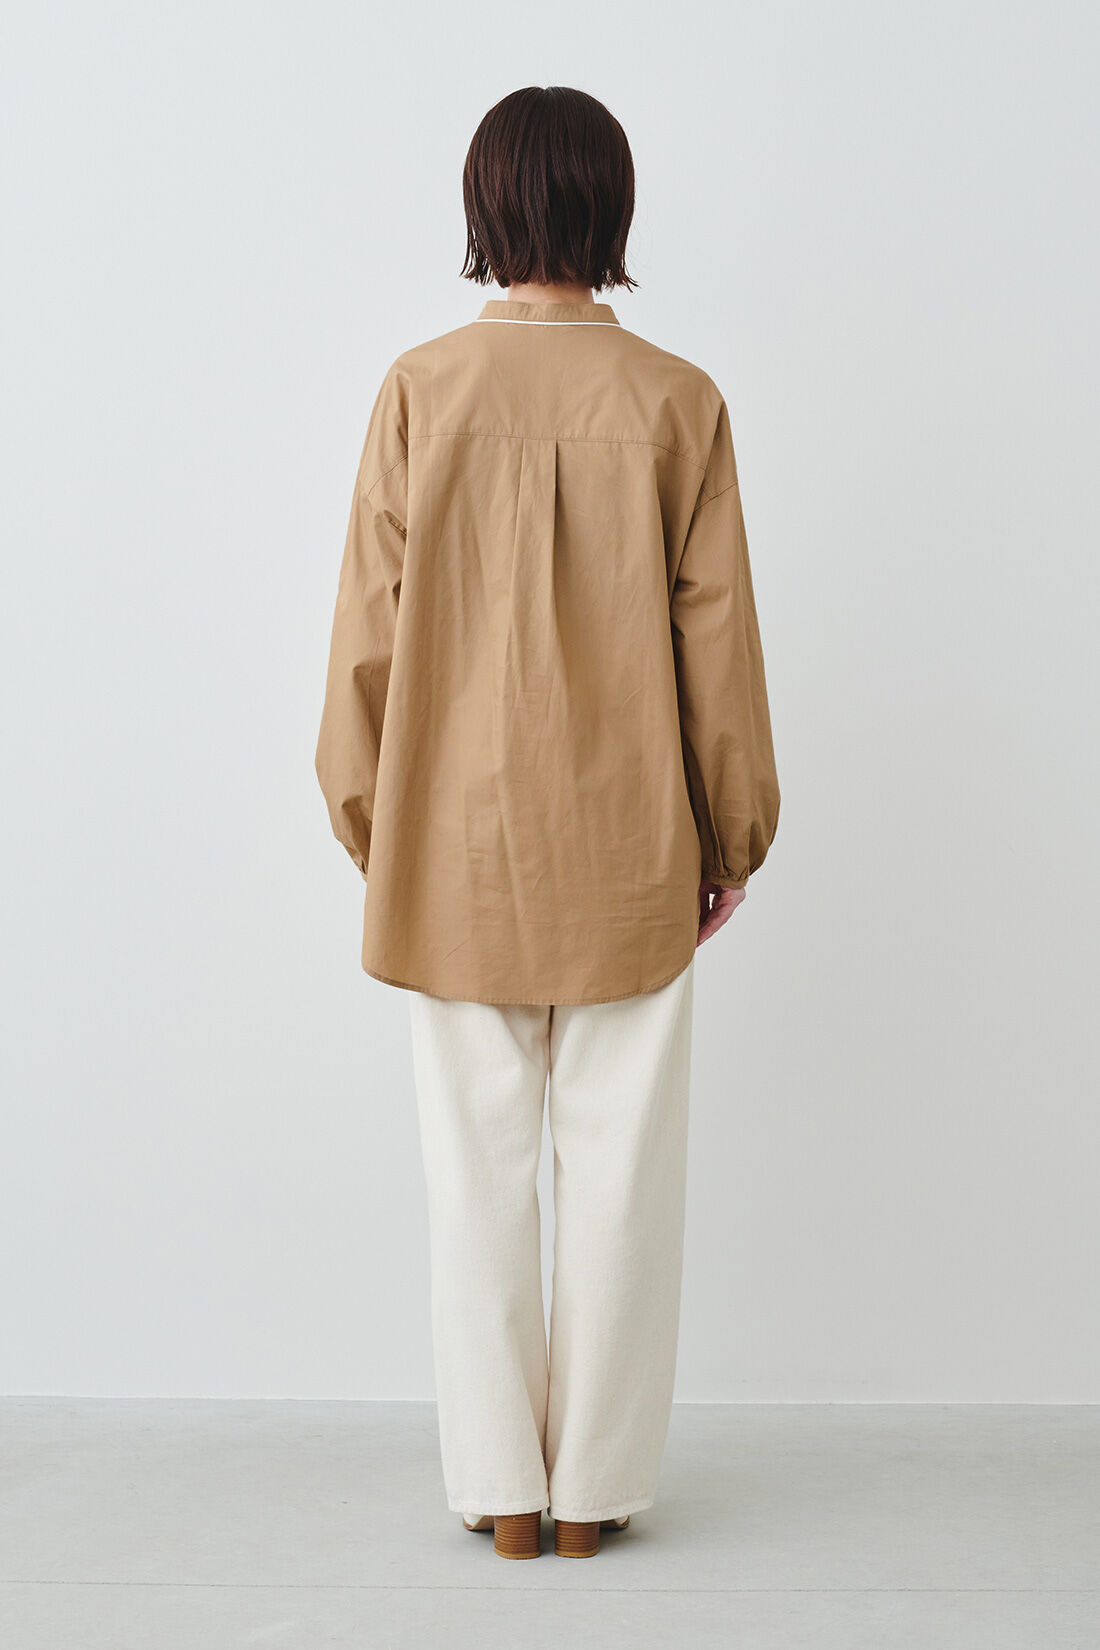 IEDIT|IEDIT[イディット]　コーデのポイントになる きれいめパイピングシャツ〈ベージュ〉|モデル身長：160cm・着用サイズ：M ※着用イメージです。お届けするカラーとは異なります。